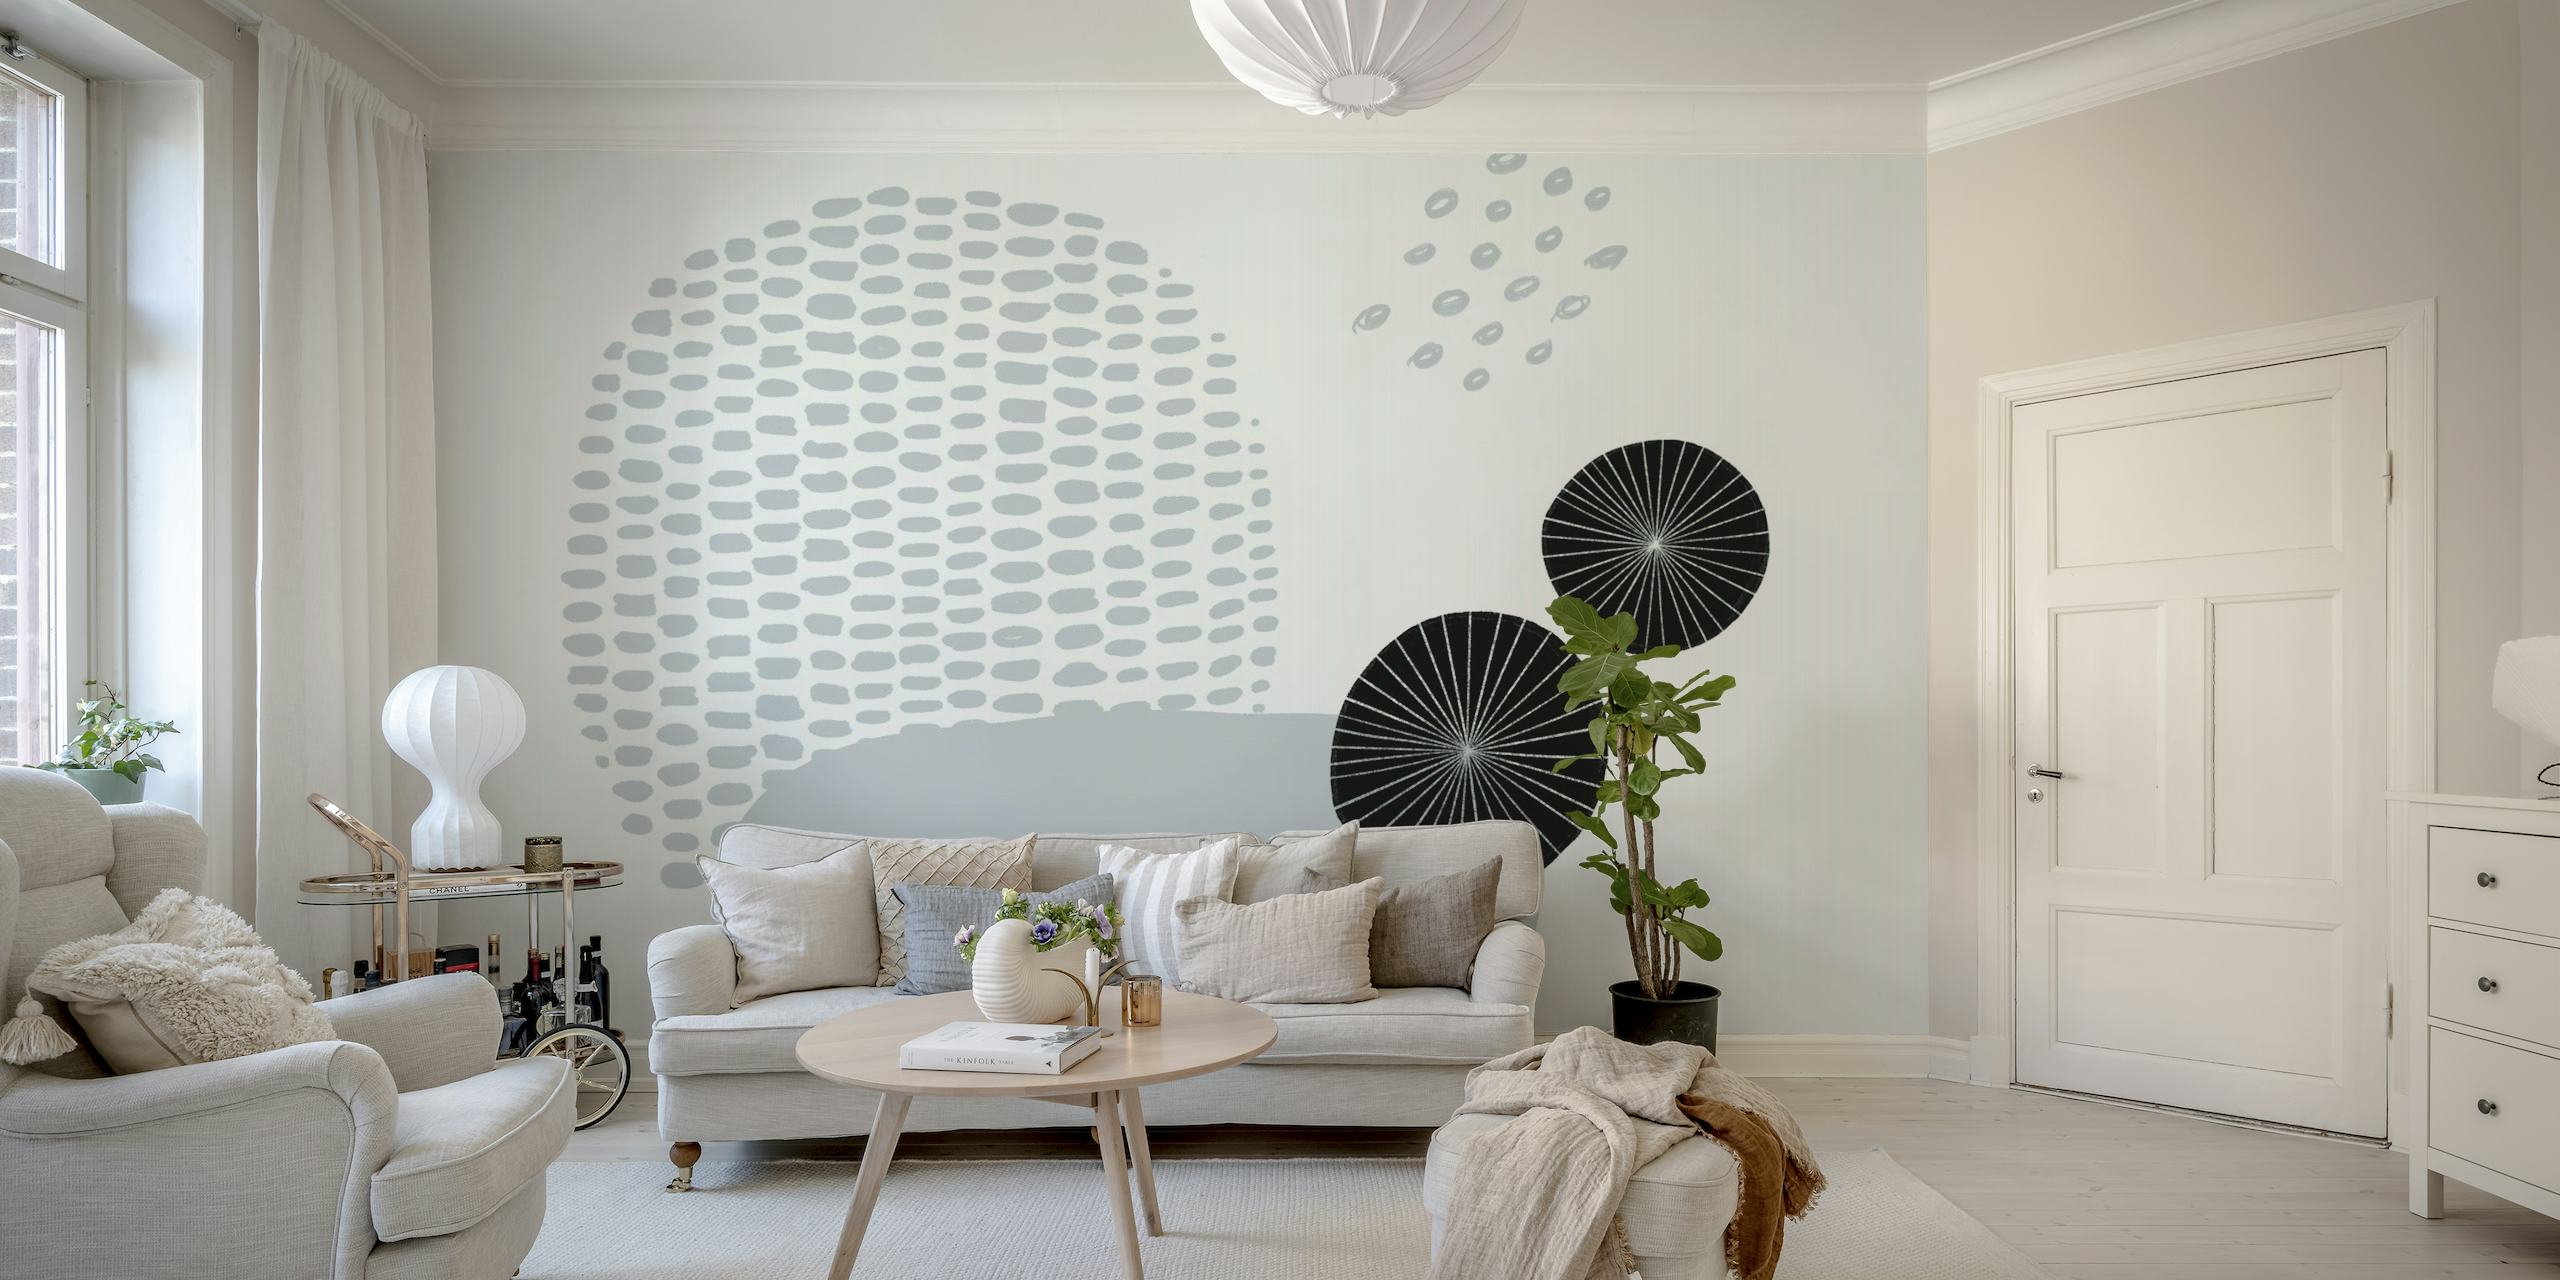 Fotomural abstracto en escala de grises con formas esféricas y patrones de puntos